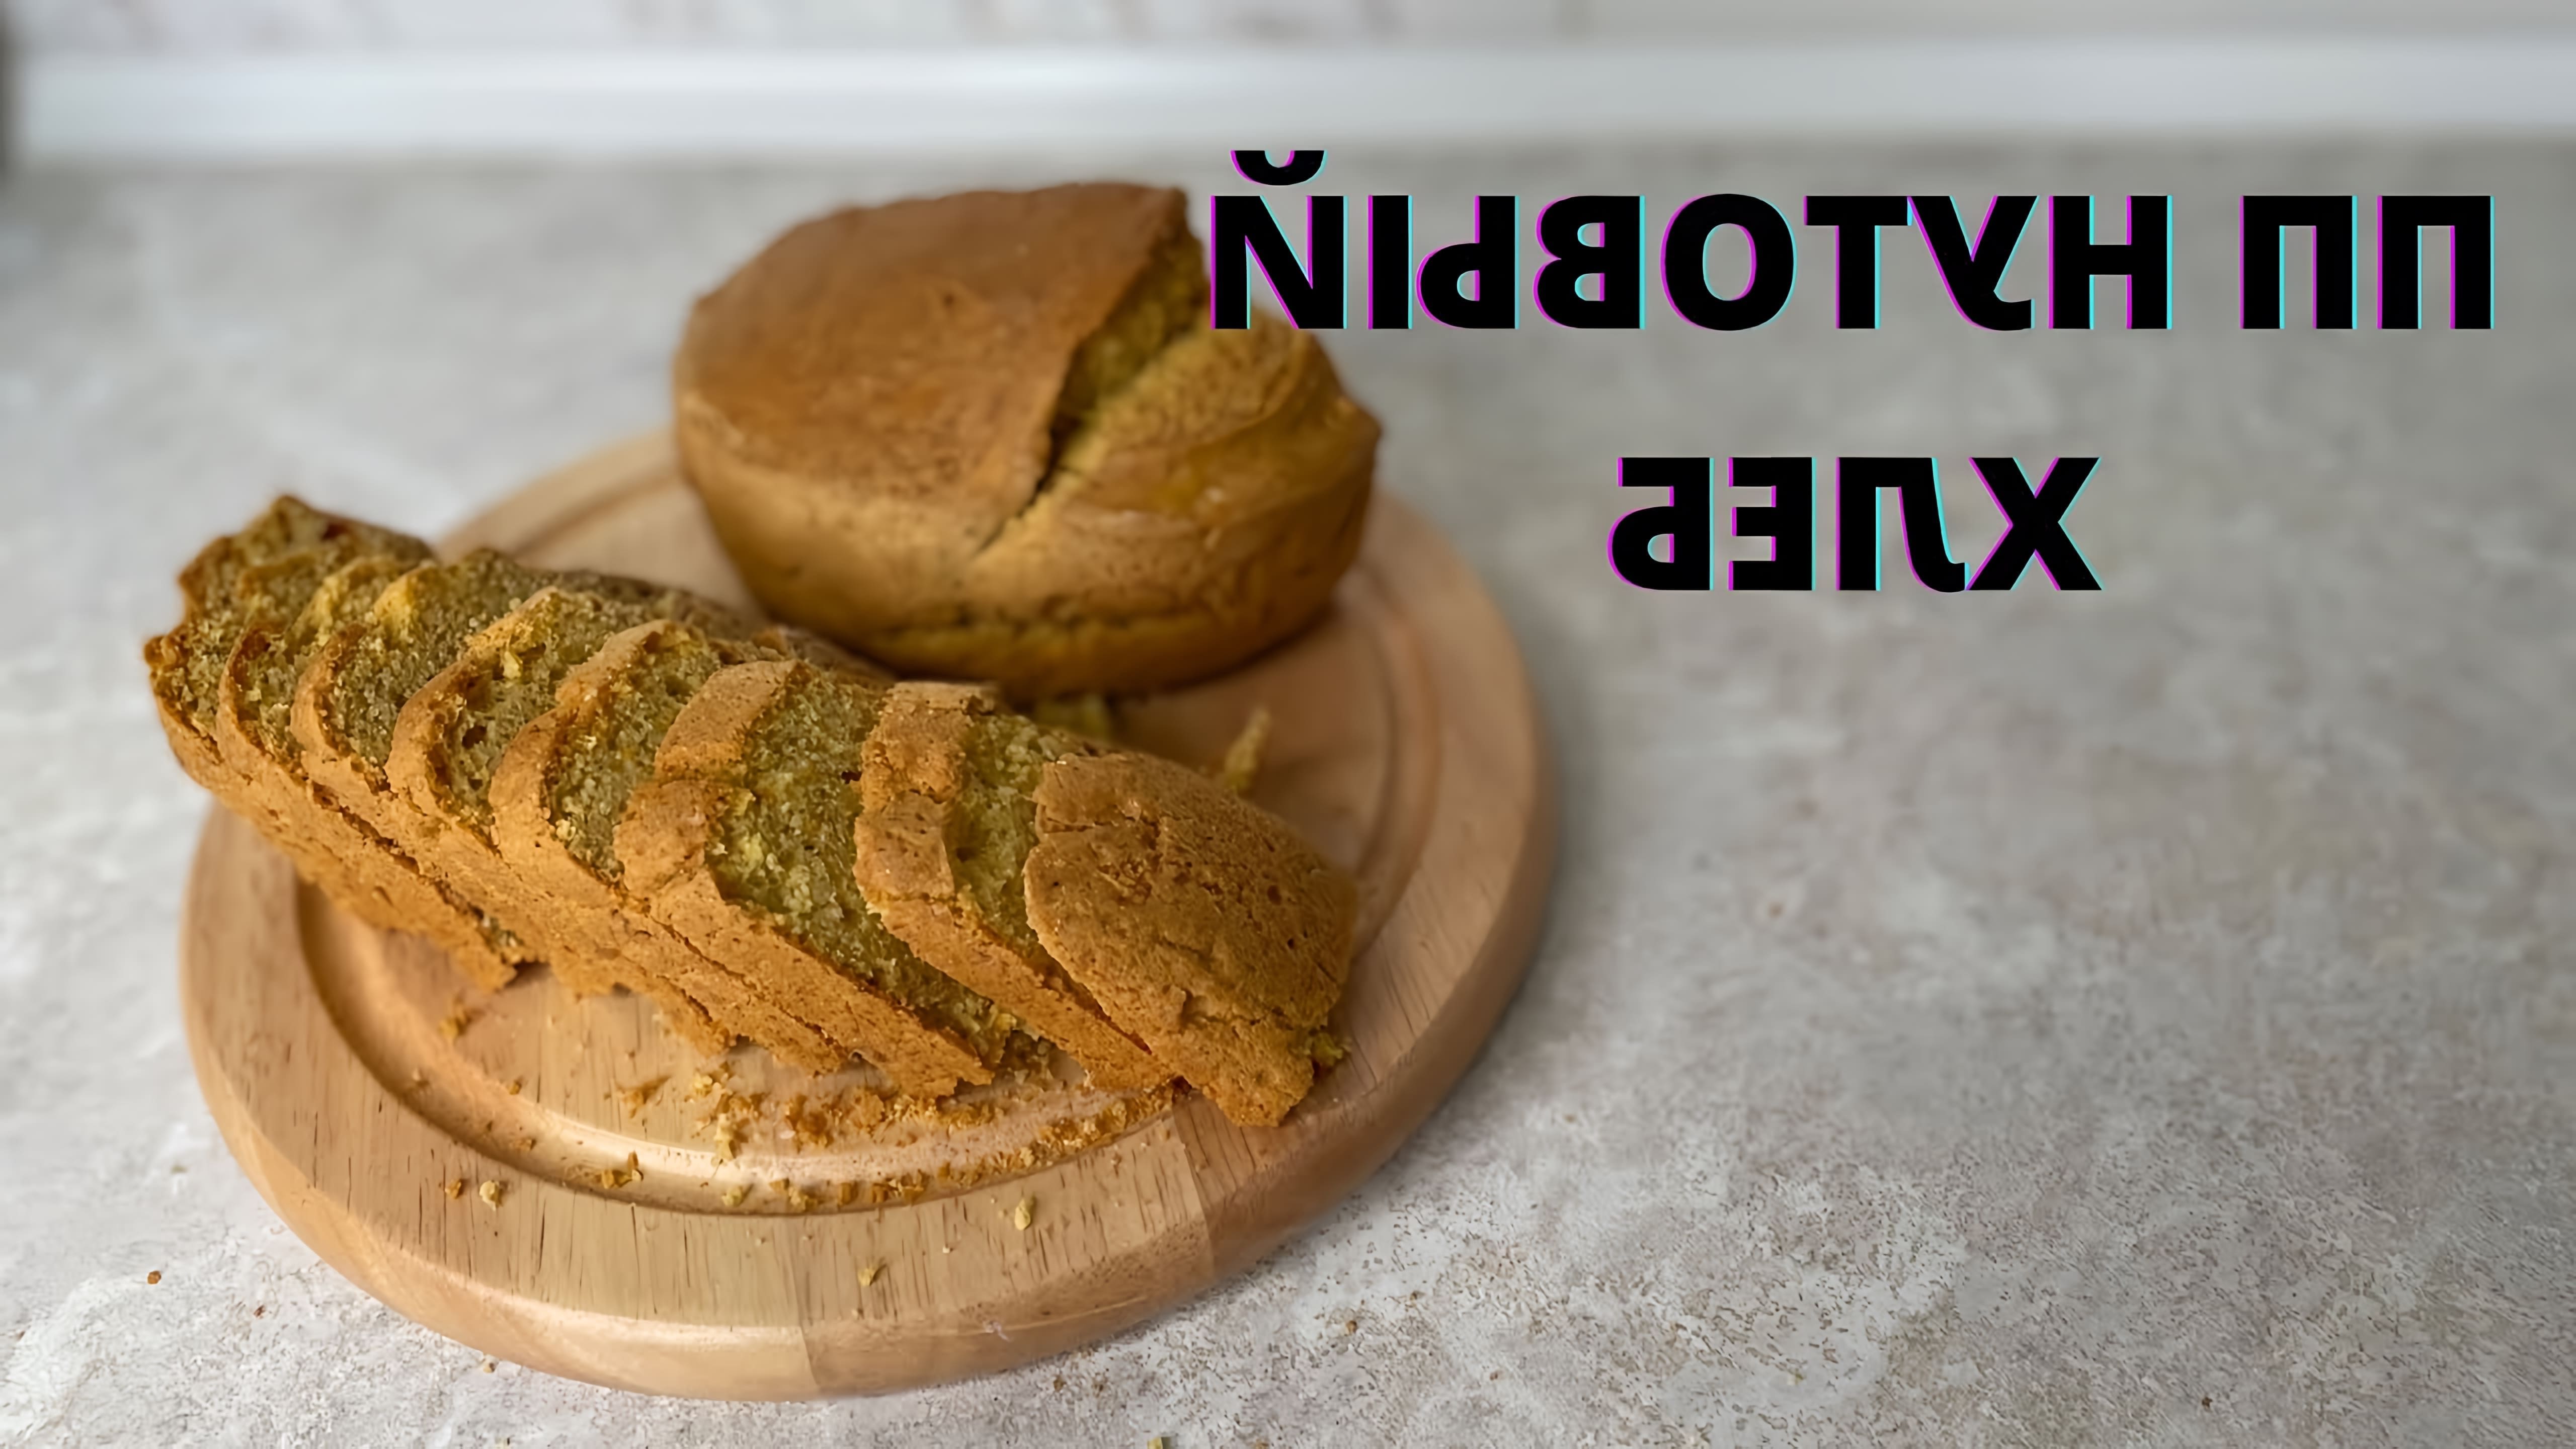 В этом видео демонстрируется рецепт приготовления полезного и вкусного хлеба из нутовой муки